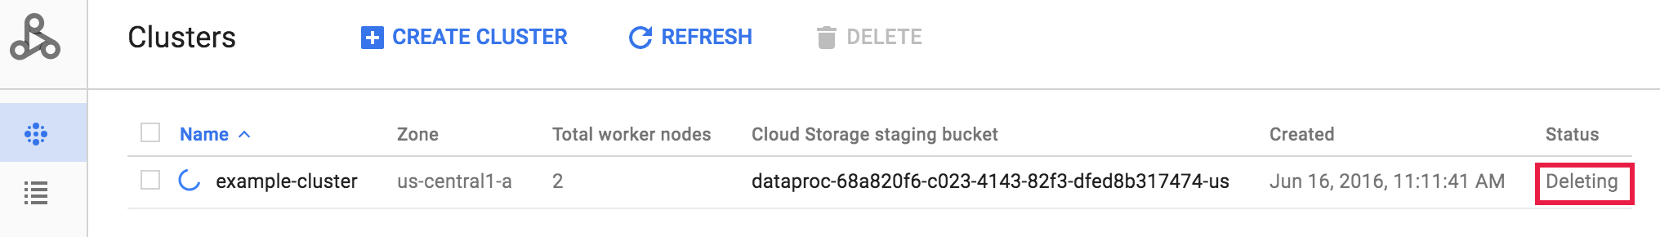 La pagina del cluster Dataproc conferma che il cluster è stato eliminato.